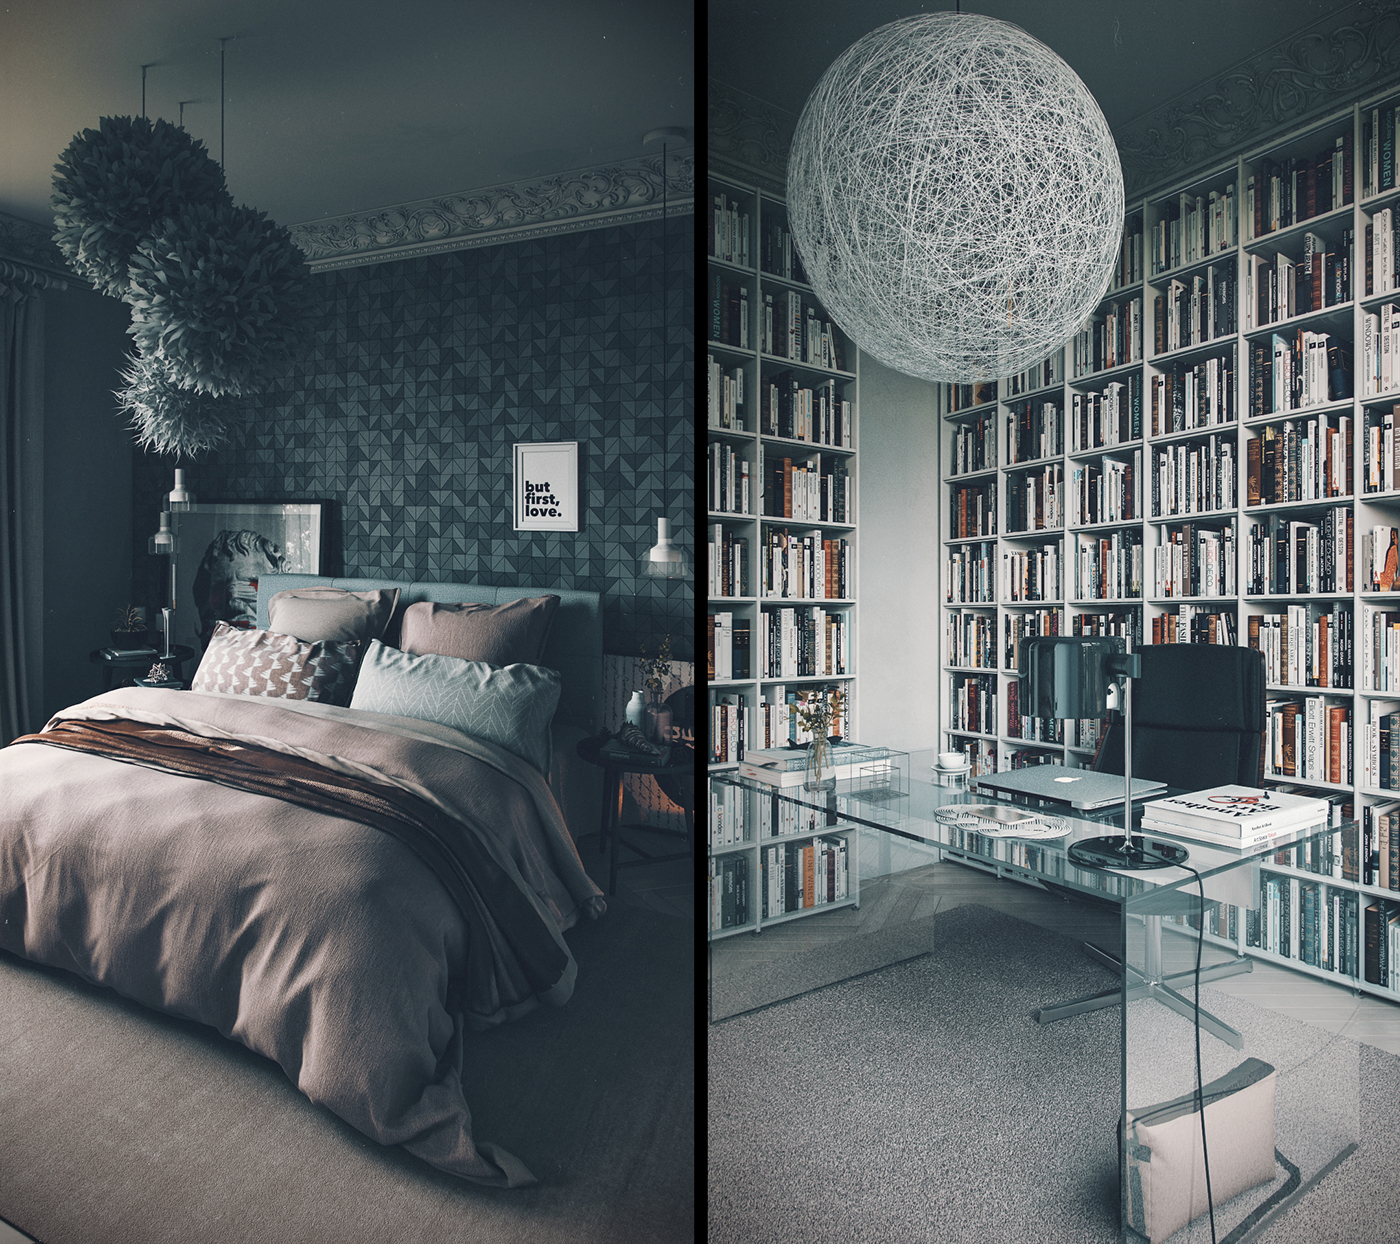 attractive dark bedroom design "width =" 1400 "height =" 1244 "srcset =" https://mileray.com/wp-content/uploads/2020/05/1588507658_850_3-Beautiful-Bedroom-Layouts-with-Attractive-Decor-That-Make-an.jpg 1400w, https: / / mileray.com/wp-content/uploads/2017/07/attractive-dark-bedroom-design-300x267.jpg 300w, https://mileray.com/wp-content/uploads/2017/07/attractive-dark- bedroom -Design-768x682.jpg 768w, https://mileray.com/wp-content/uploads/2017/07/attractive-dark-bedroom-design-1024x910.jpg 1024w, https://mileray.com/wp- content / uploads / 2017/07 / attractive-dark-bedroom-design-696x618.jpg 696w, https://mileray.com/wp-content/uploads/2017/07/attractive-dark-bedroom-design-1068x949.jpg 1068w , https://mileray.com/wp-content/uploads/2017/07/attractive-dark-bedroom-design-473x420.jpg 473w "sizes =" (maximum width: 1400px) 100vw, 1400px